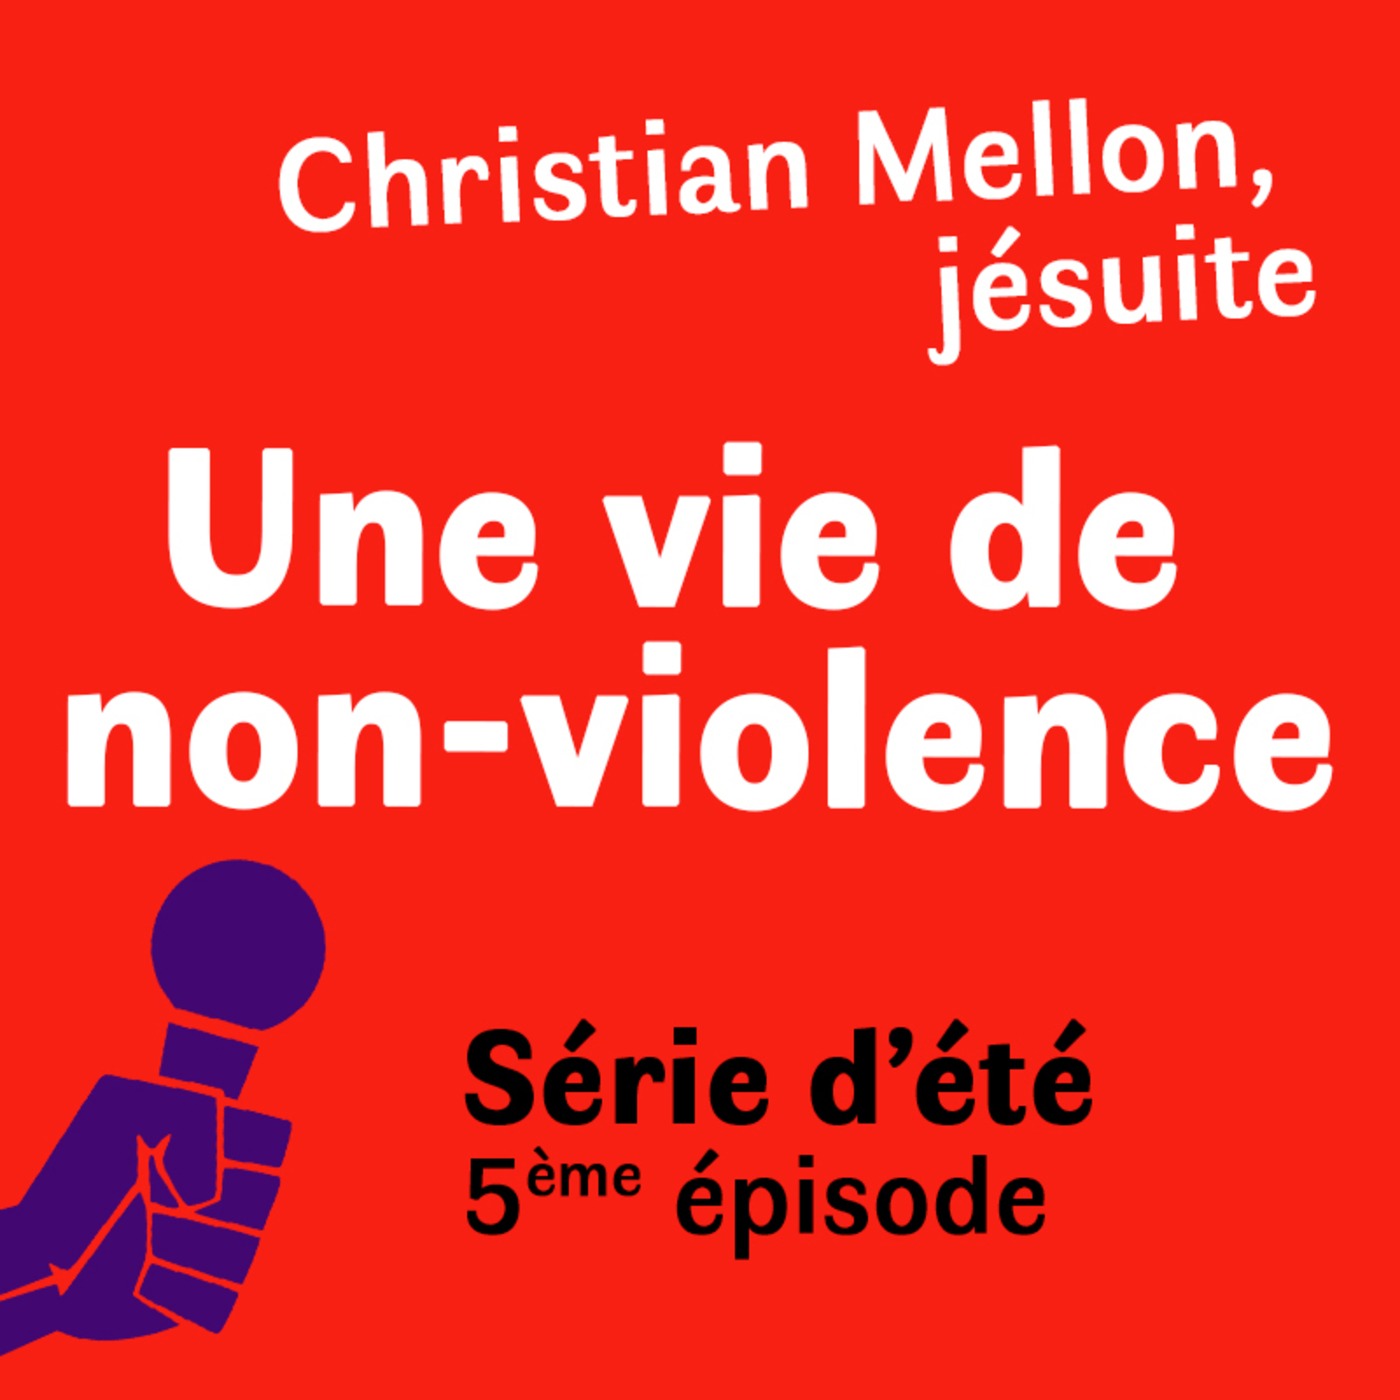 Série d'été : Christian Mellon, jésuite, une vie de non violence. Episode 5 : On pose un regard sur les luttes d'aujourd'hui